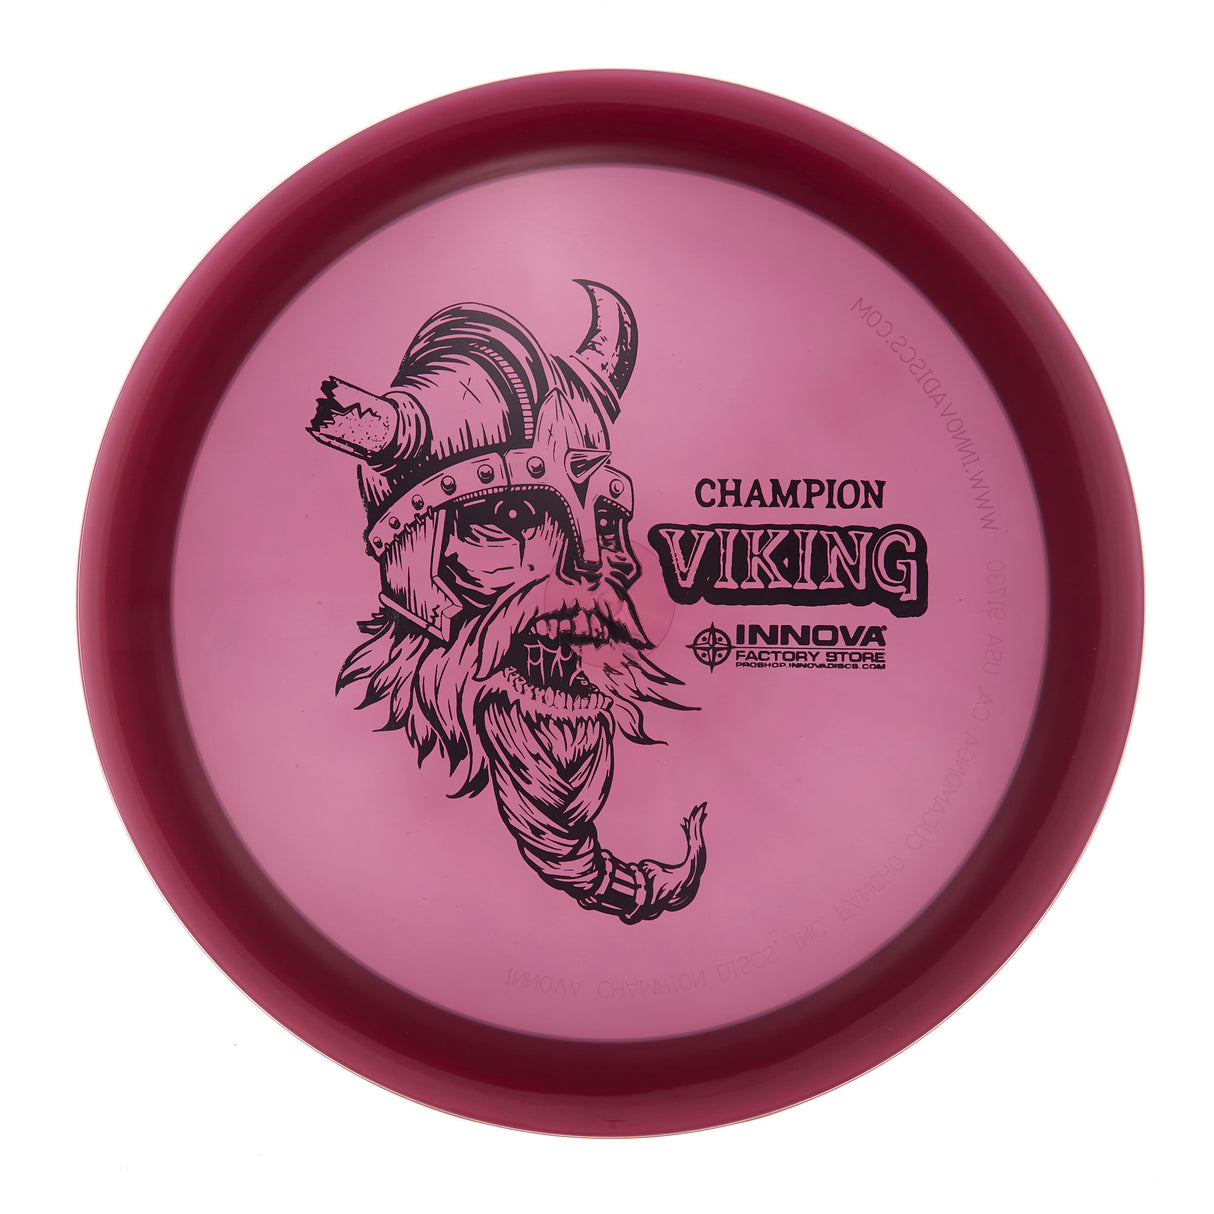 Innova Viking - Champion  174g | Style 0002